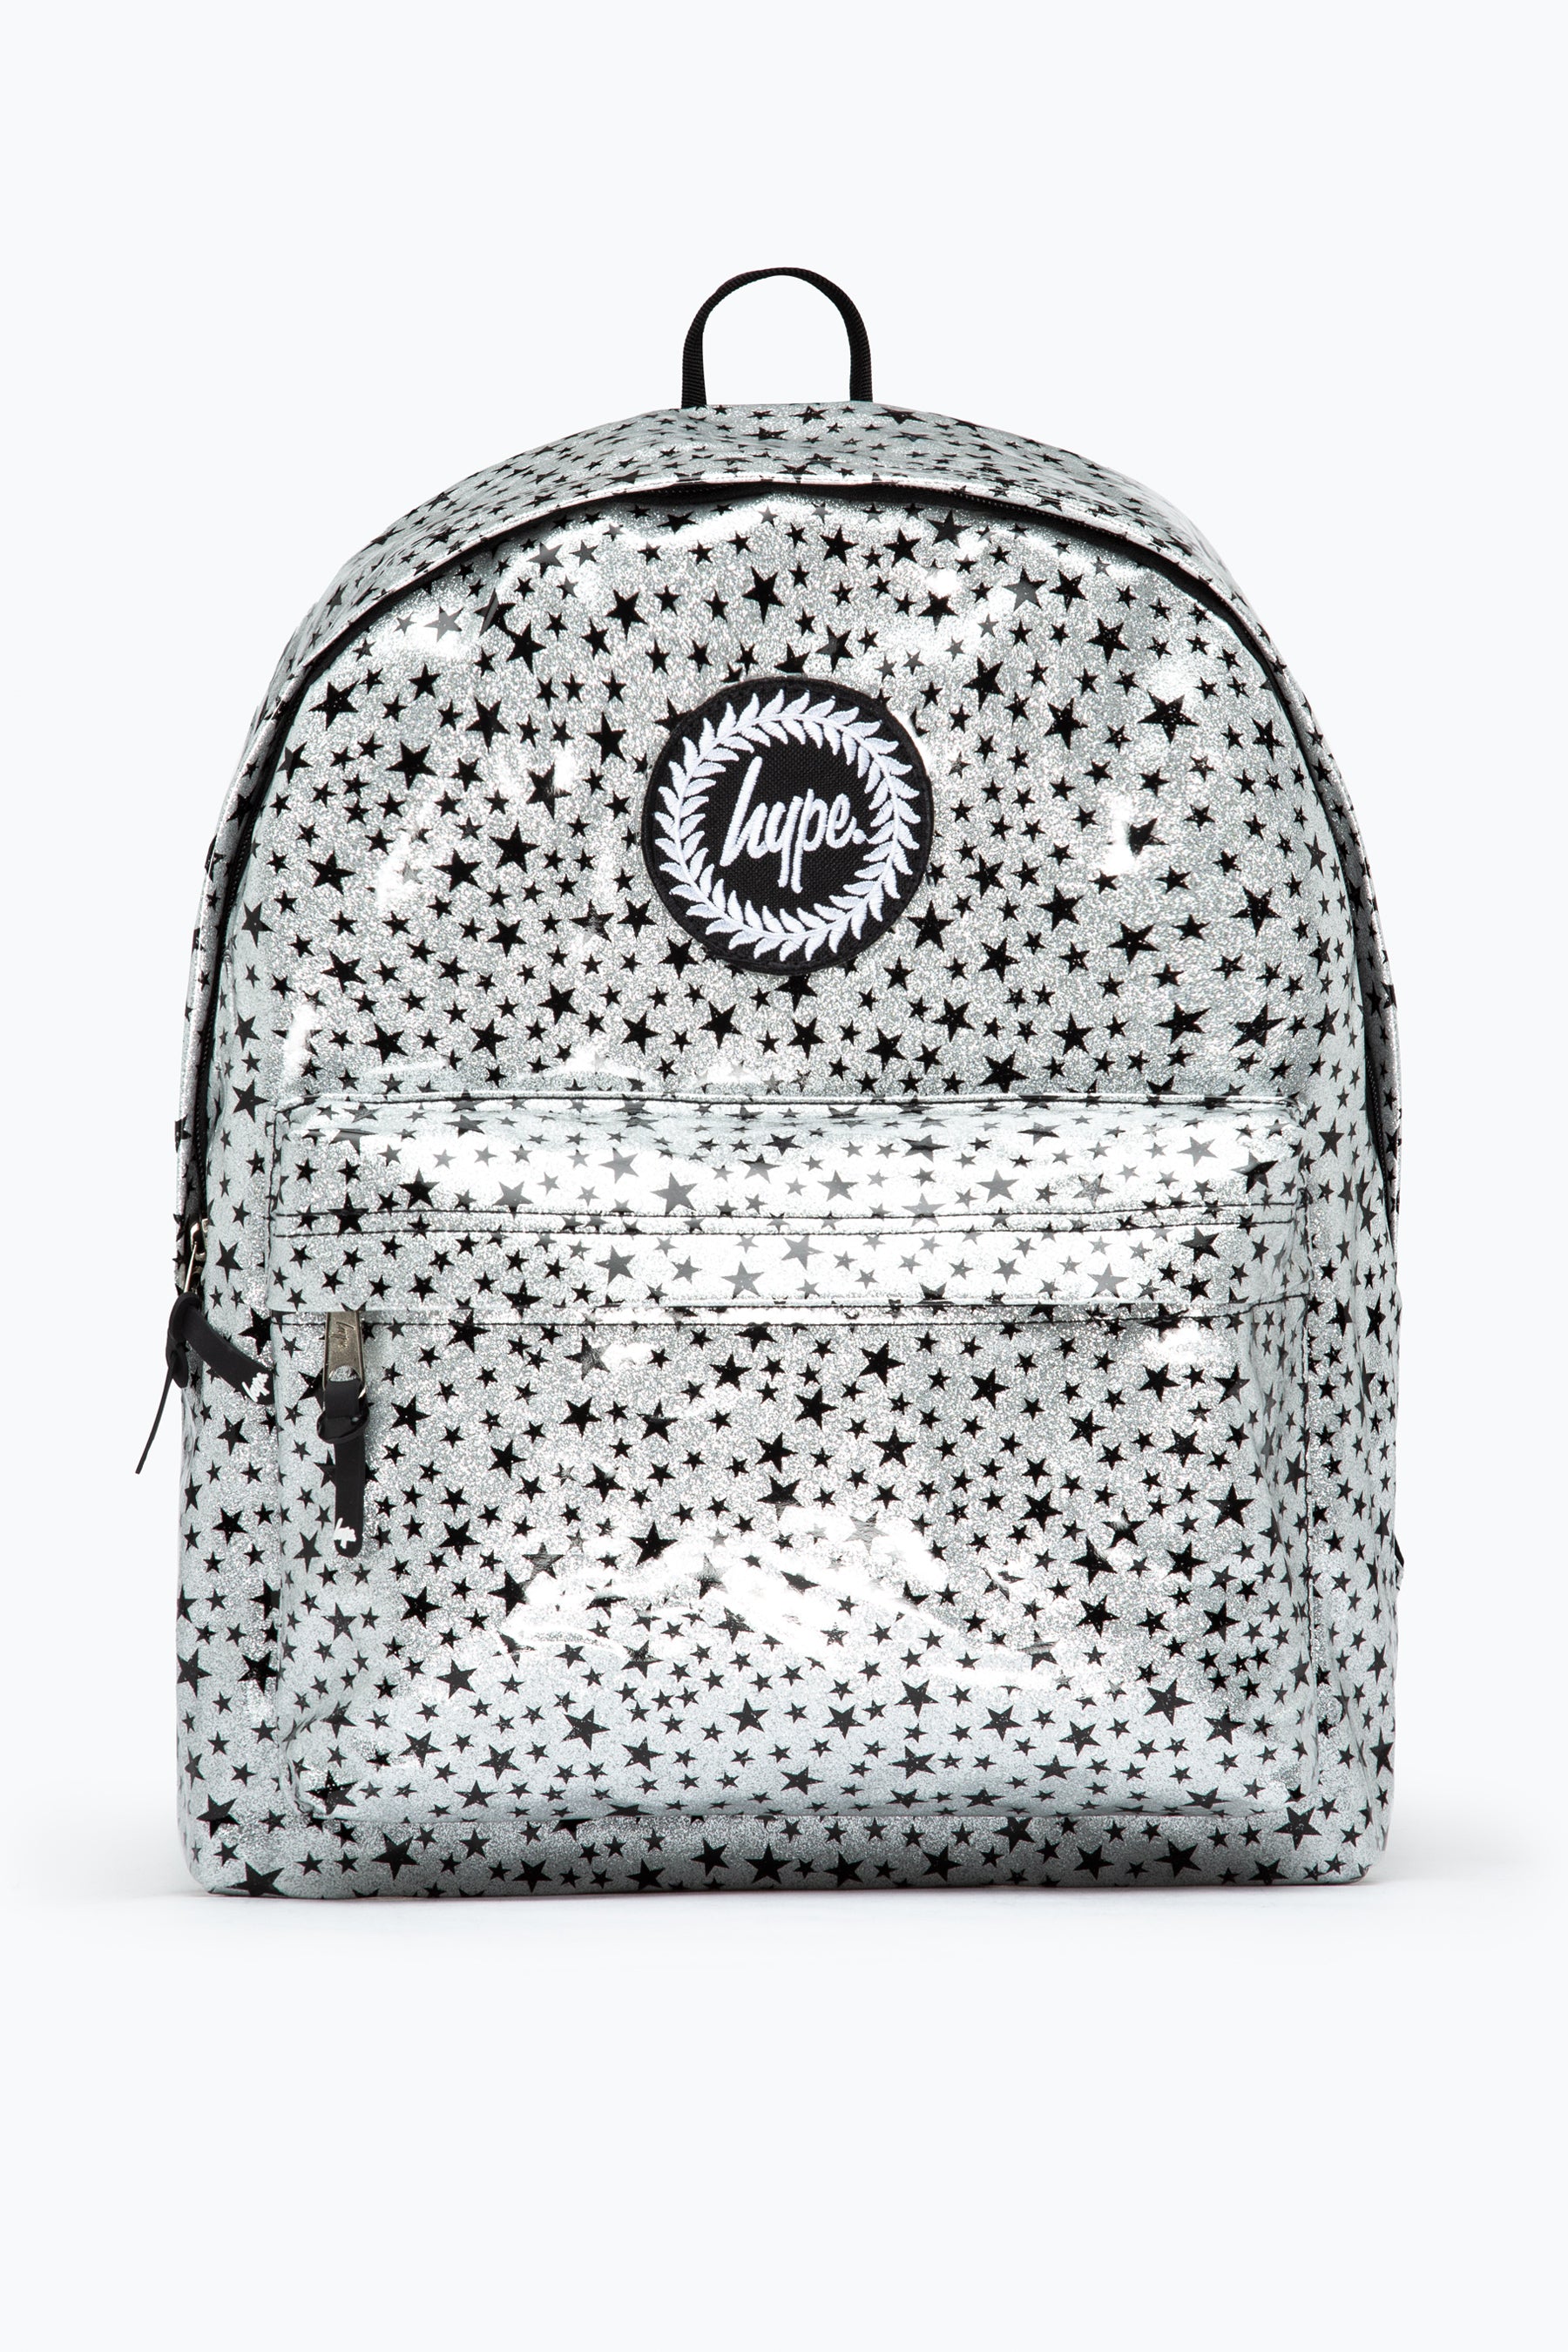 hype silver glitter star backpack